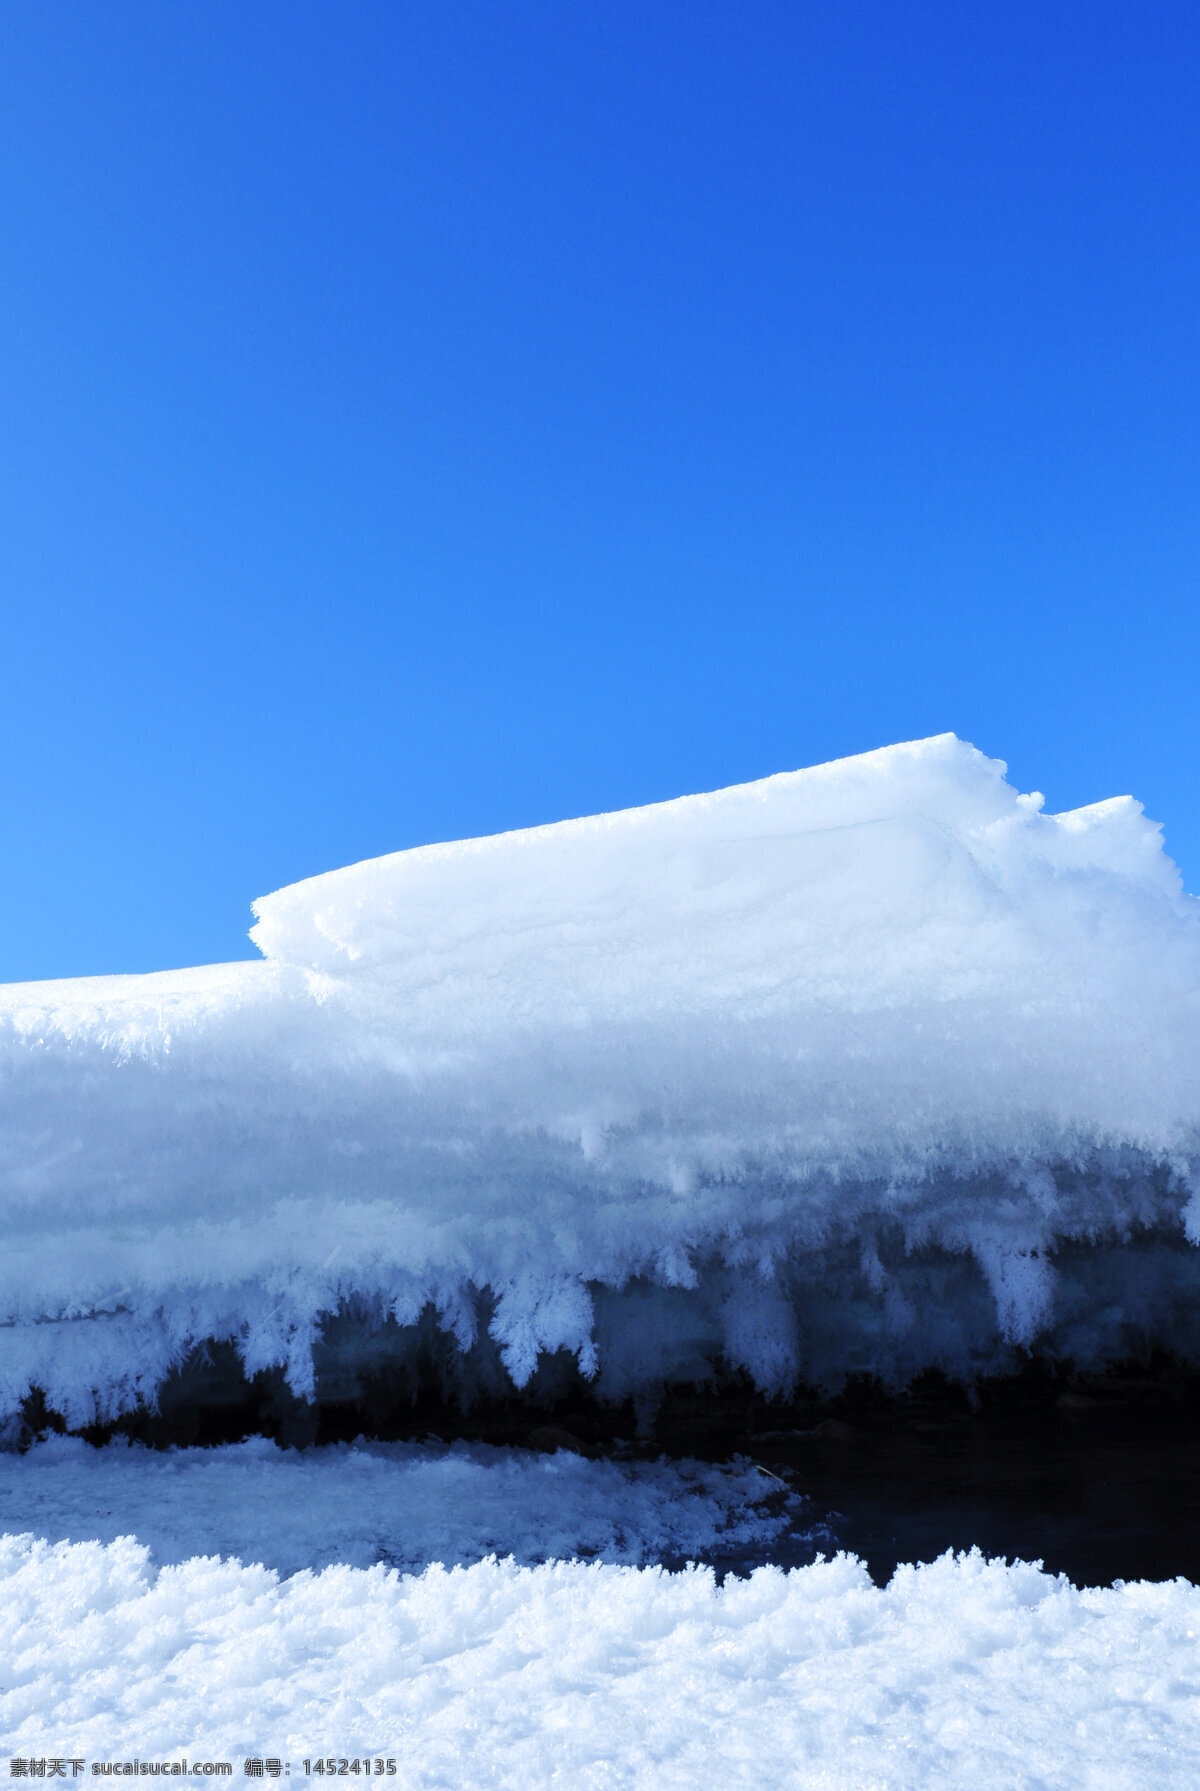 雪景 冰雪景色 自然风景 冬季 冰雪 白色 雪 自然风光 雪白 冰雪世界 自然景观 蓝色